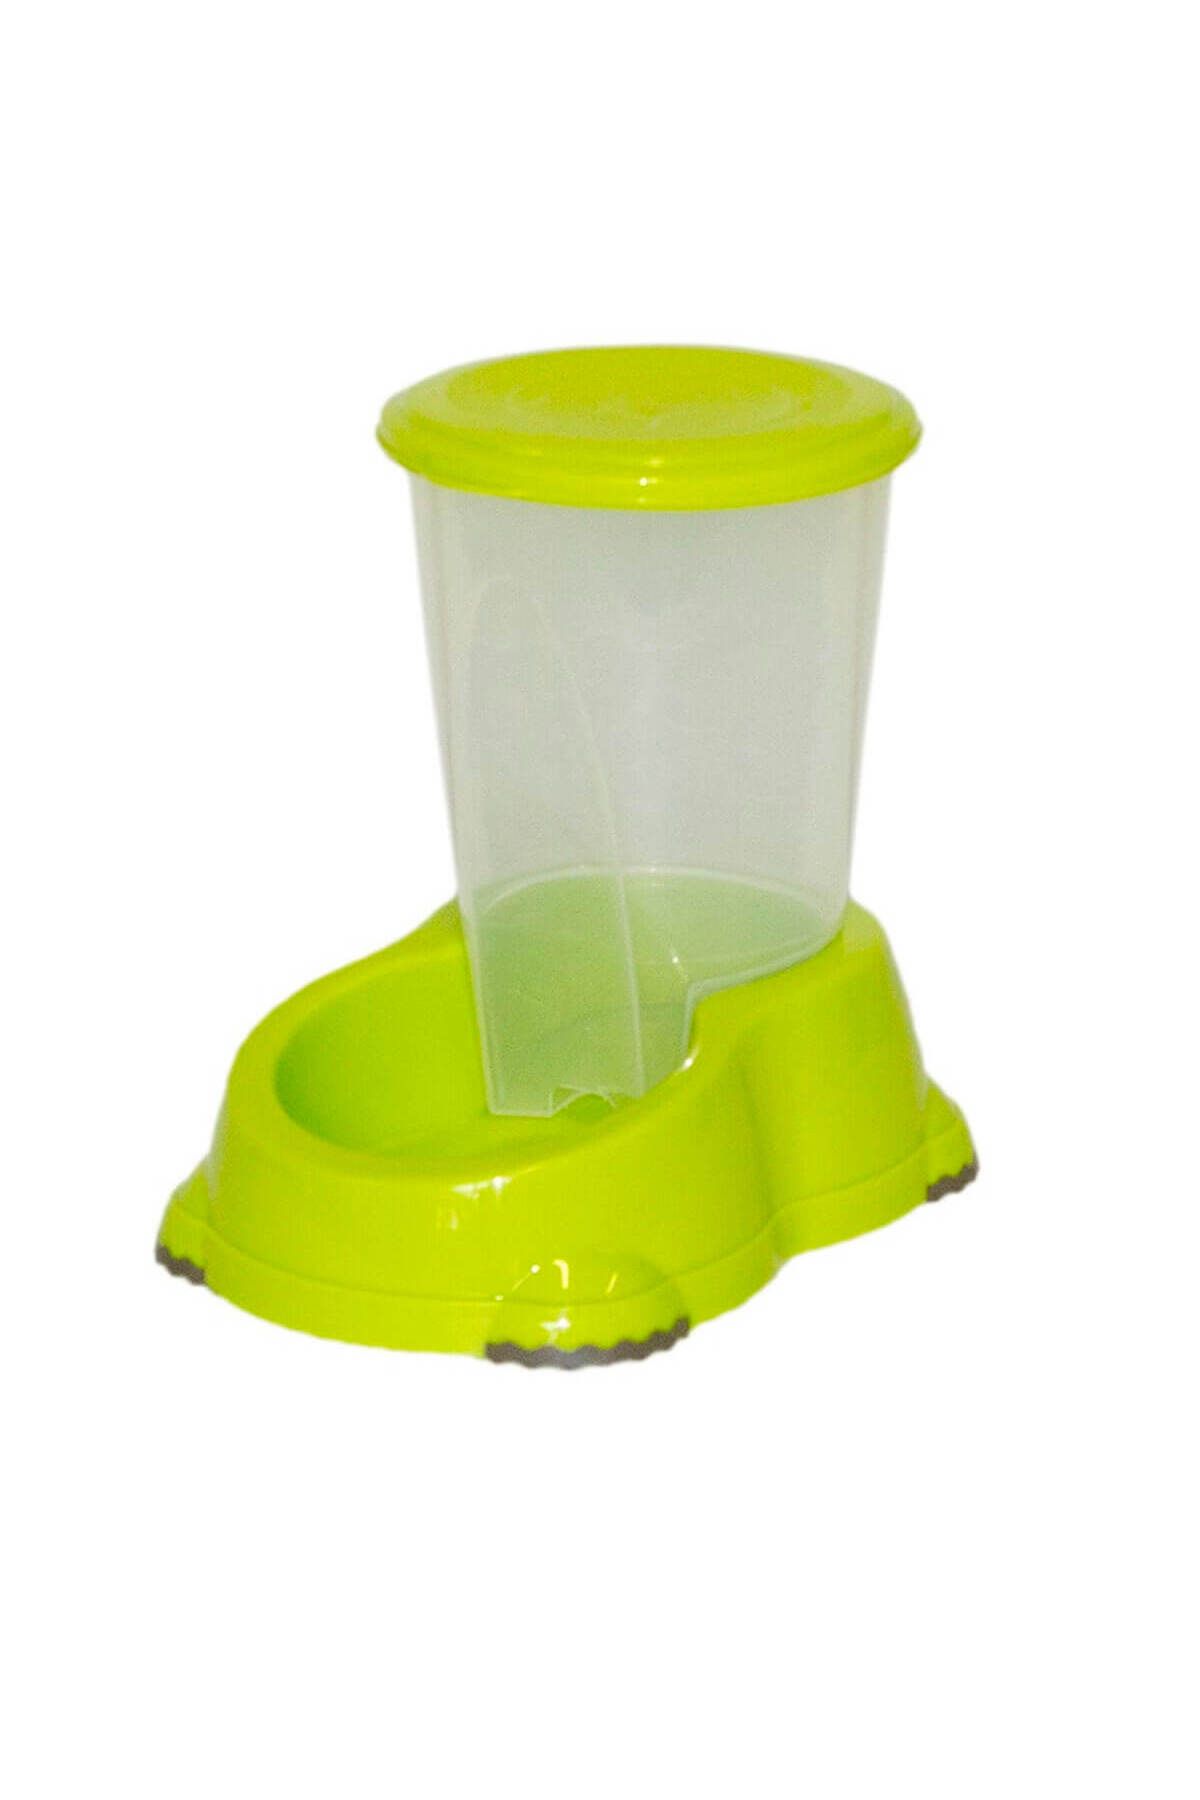 Moderna Saklamalı Köpek Su Kabı Yeşil 1,5 Lt